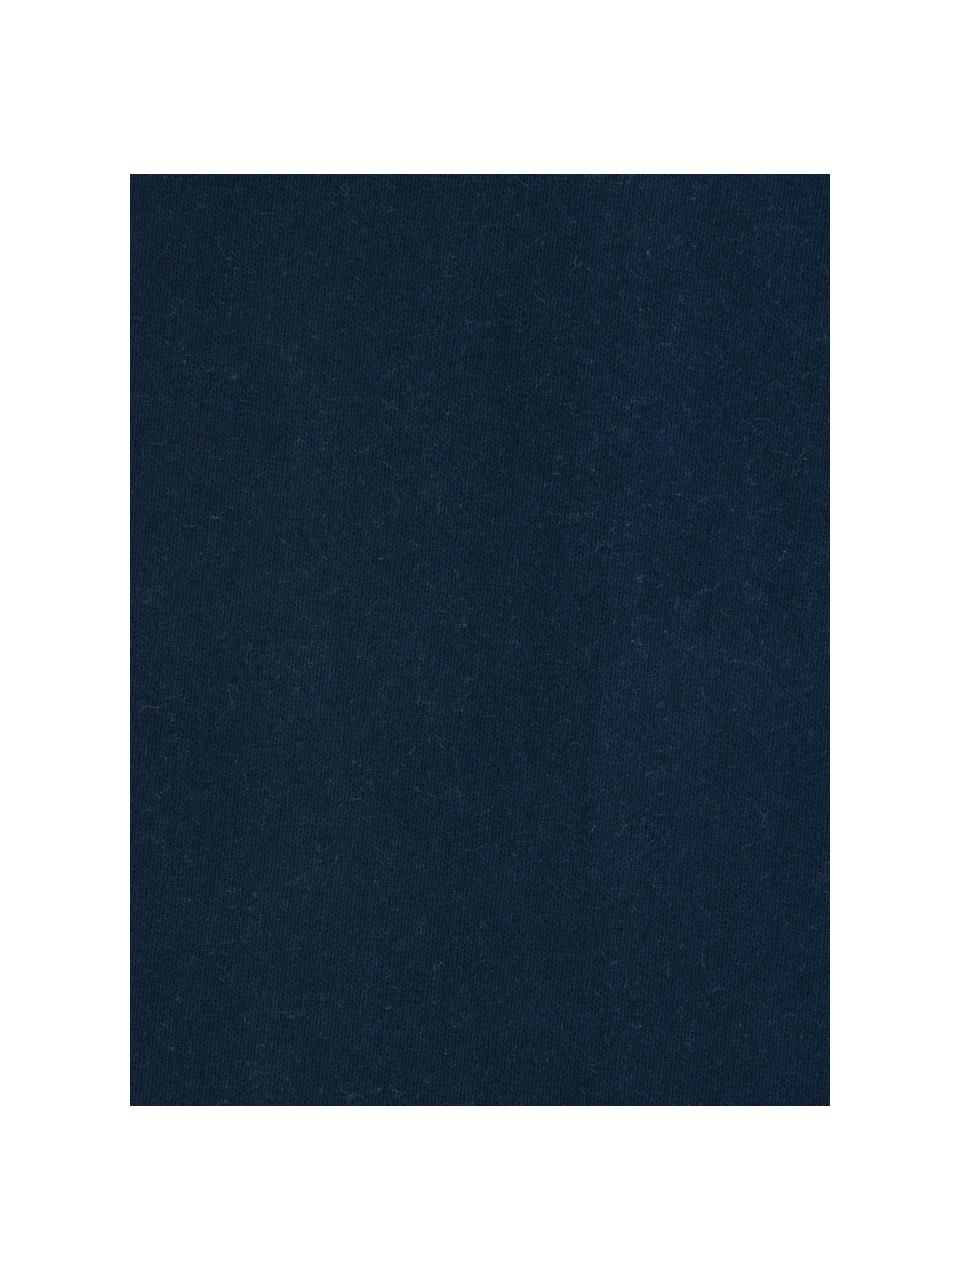 Flanell-Spannbettlaken Biba in Marineblau, Webart: Flanell Flanell ist ein k, Dunkelblau, B 180 x L 200 cm